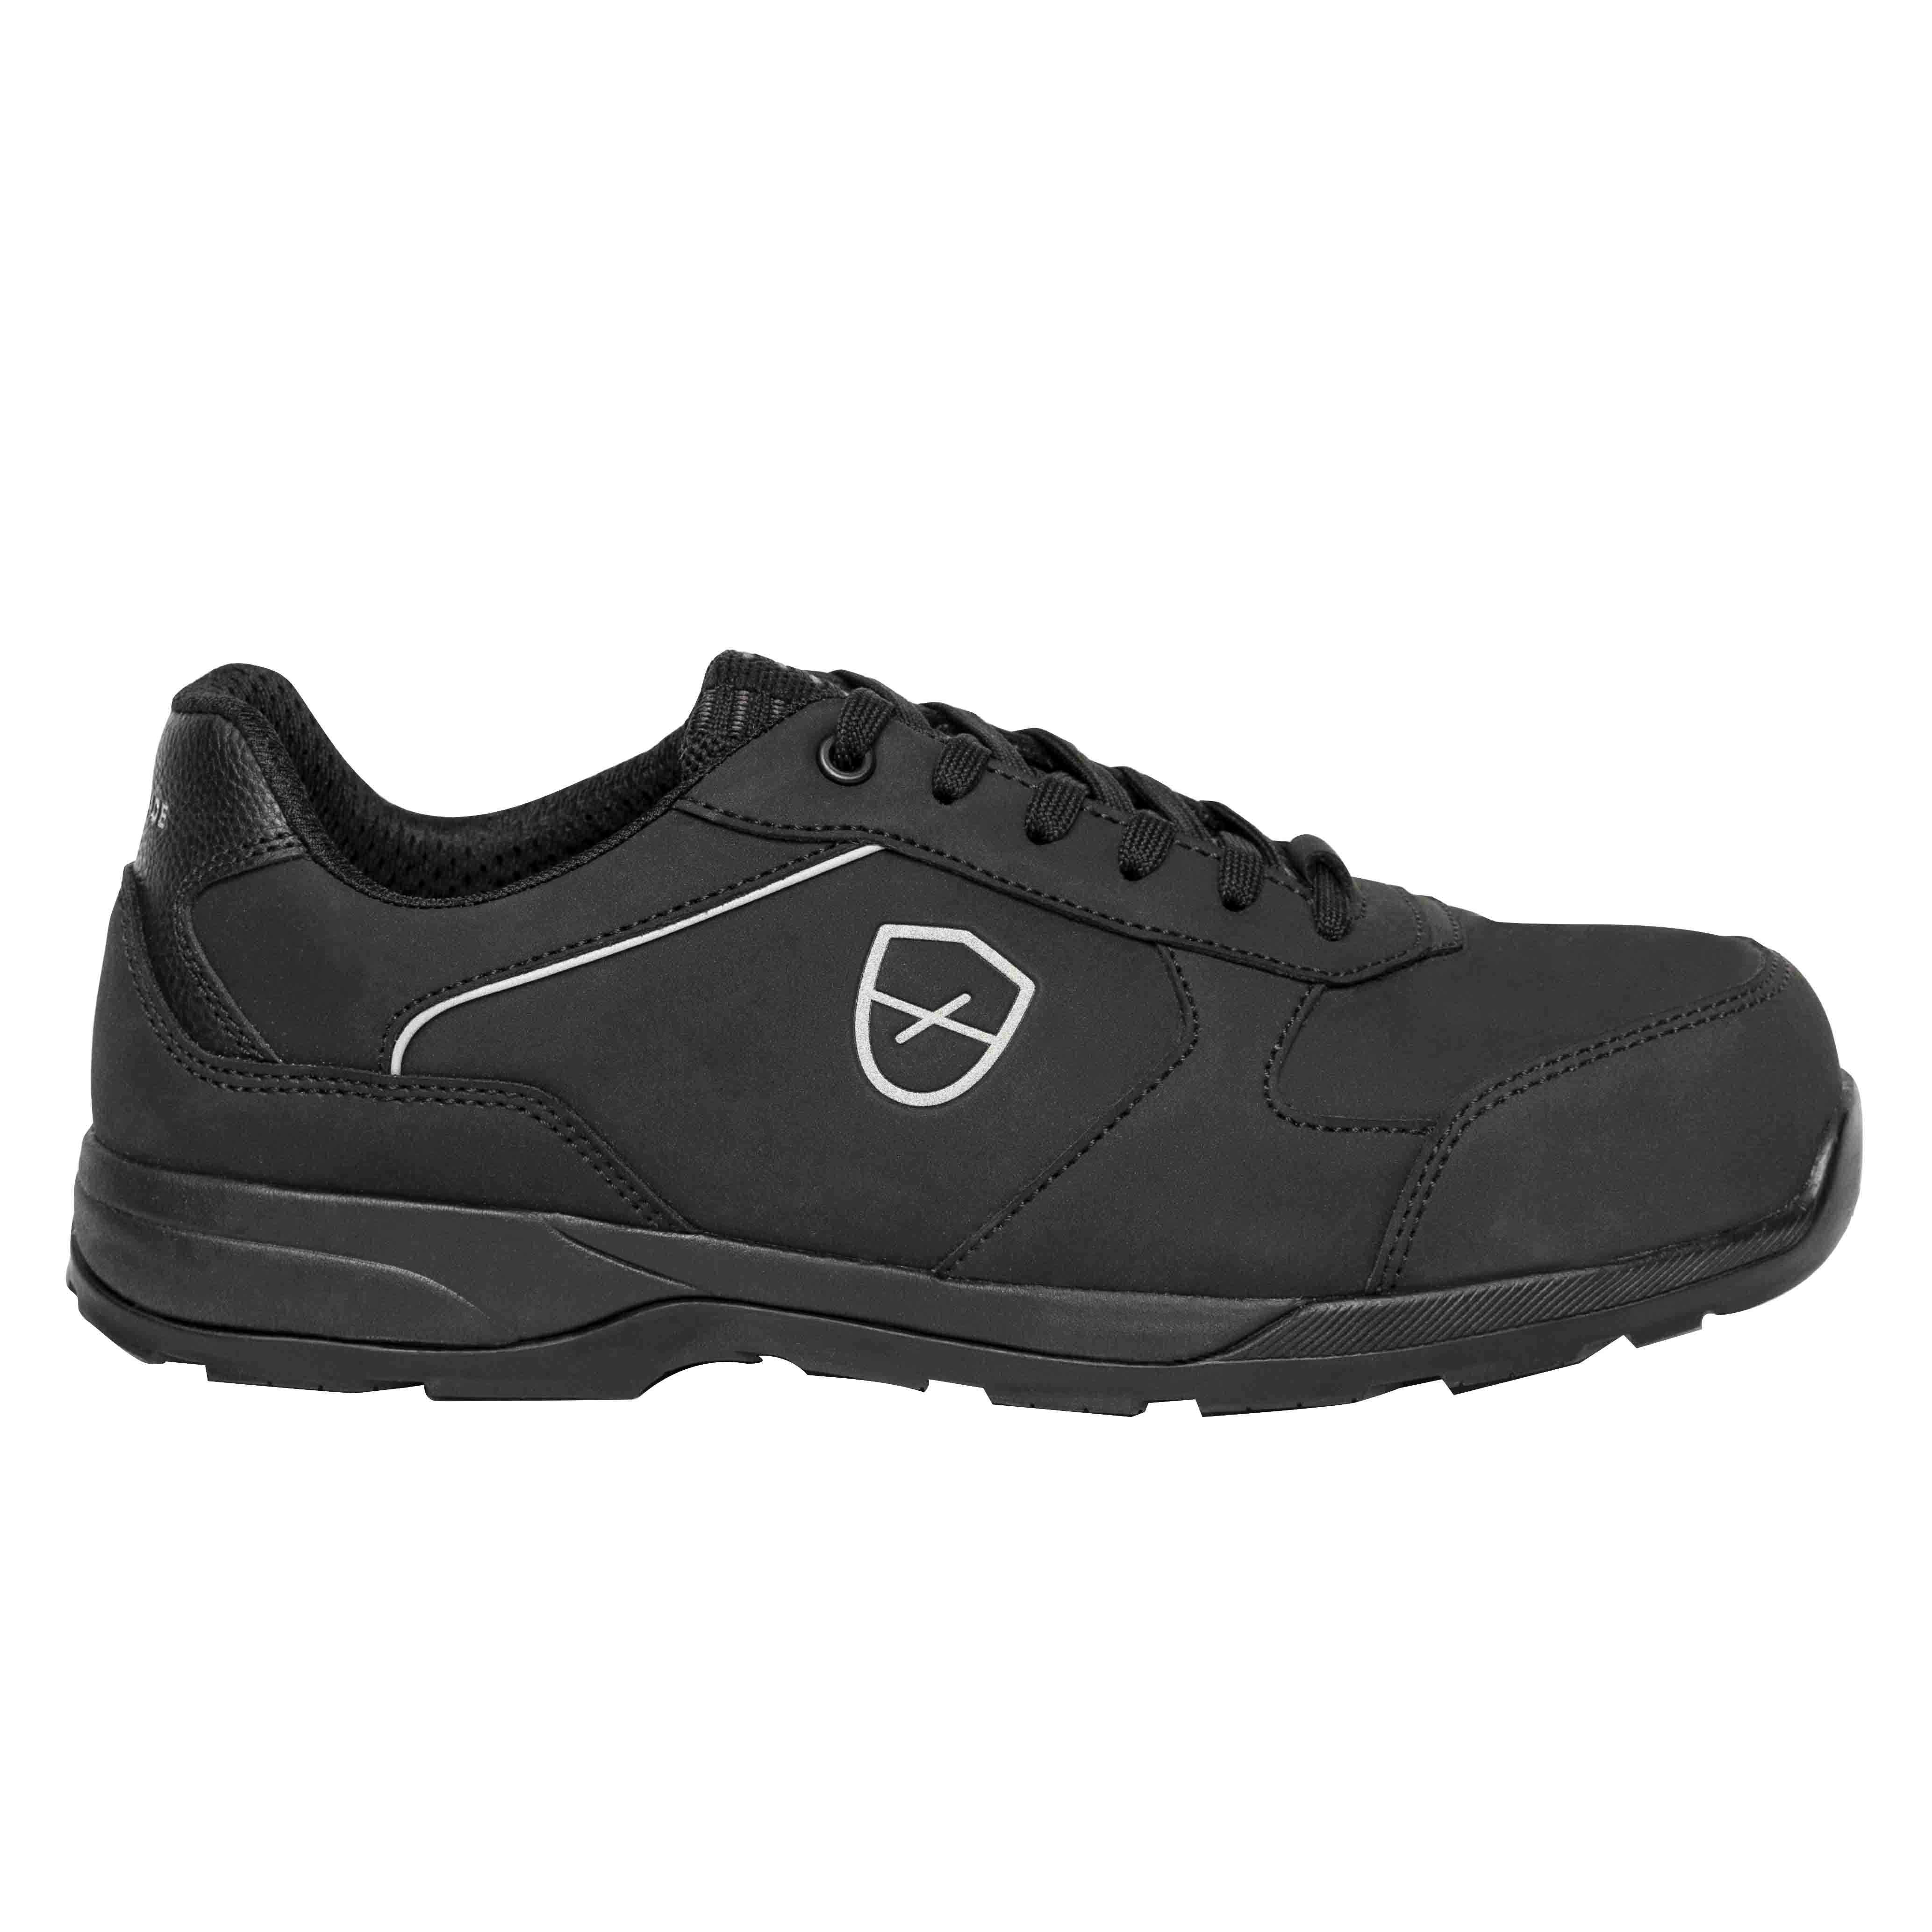 Chaussures de sécurité basses Romane Mixte, T 45 Noir, Antistatiques